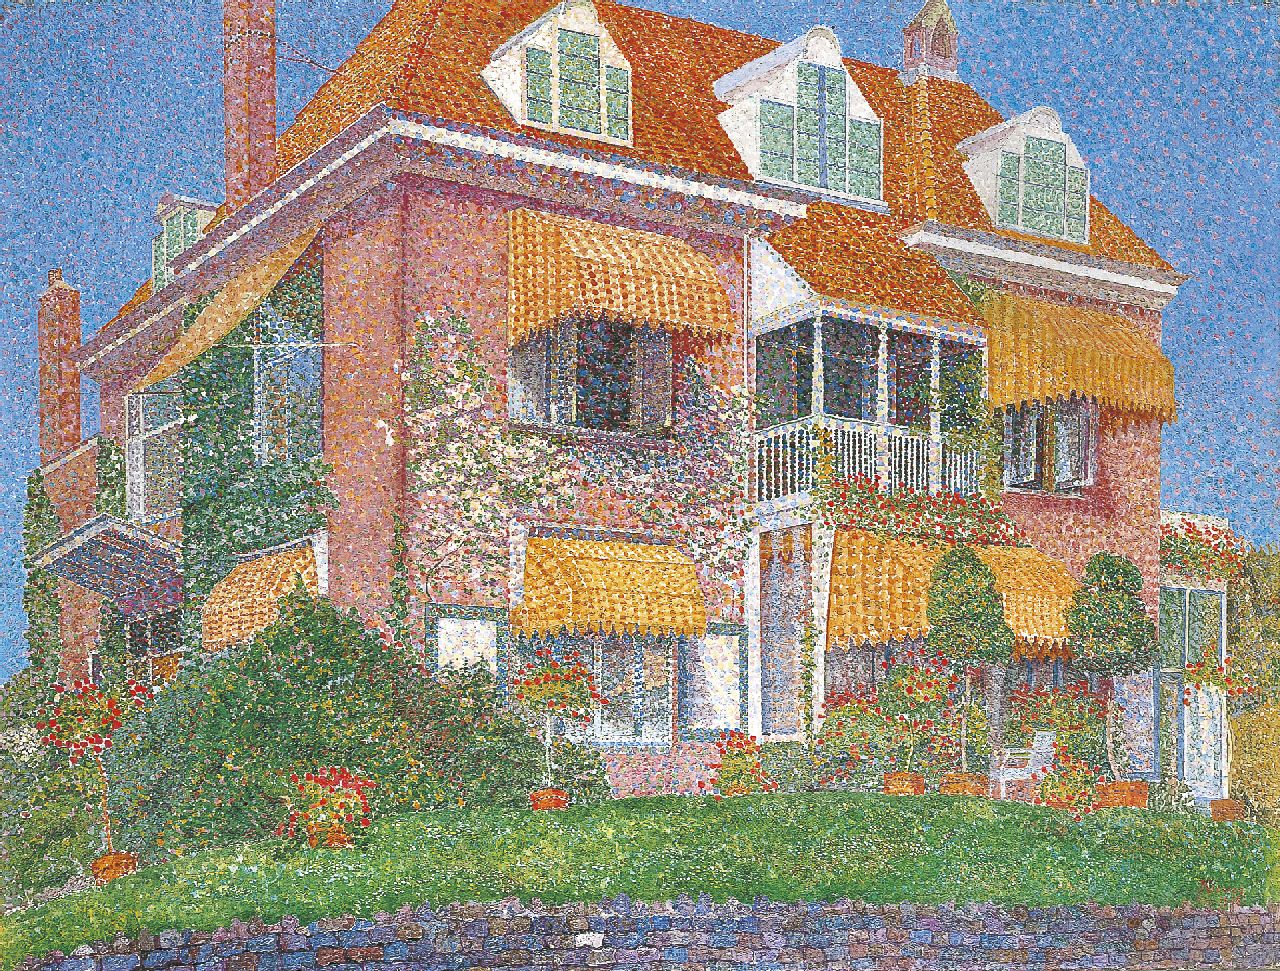 Jakob Nieweg | Villa Kinheim, Bloemendaal, olieverf op doek, 61,6 x 80,6 cm, gesigneerd r.o. en gedateerd Aug. 1915